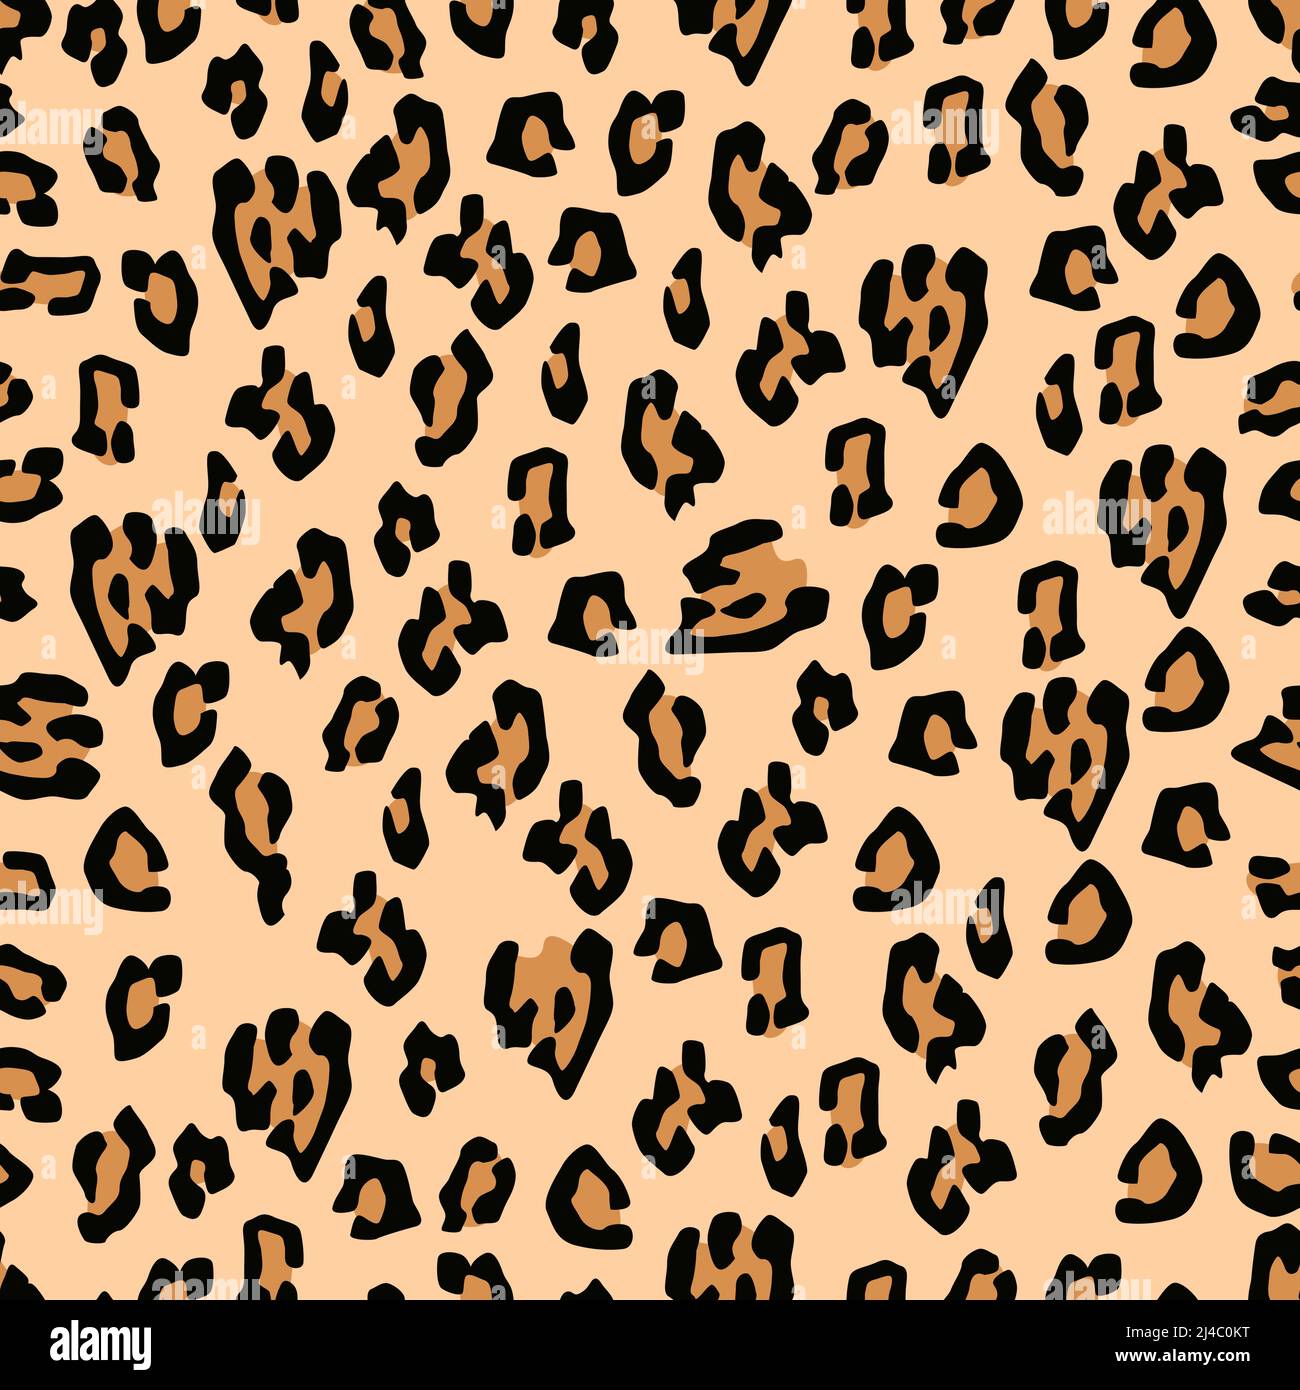 Realistische bunte Leoparden Haut Textur isoliert auf hellem Hintergrund ist in Nahtloses Muster - Vektor-Illustration Stock Vektor